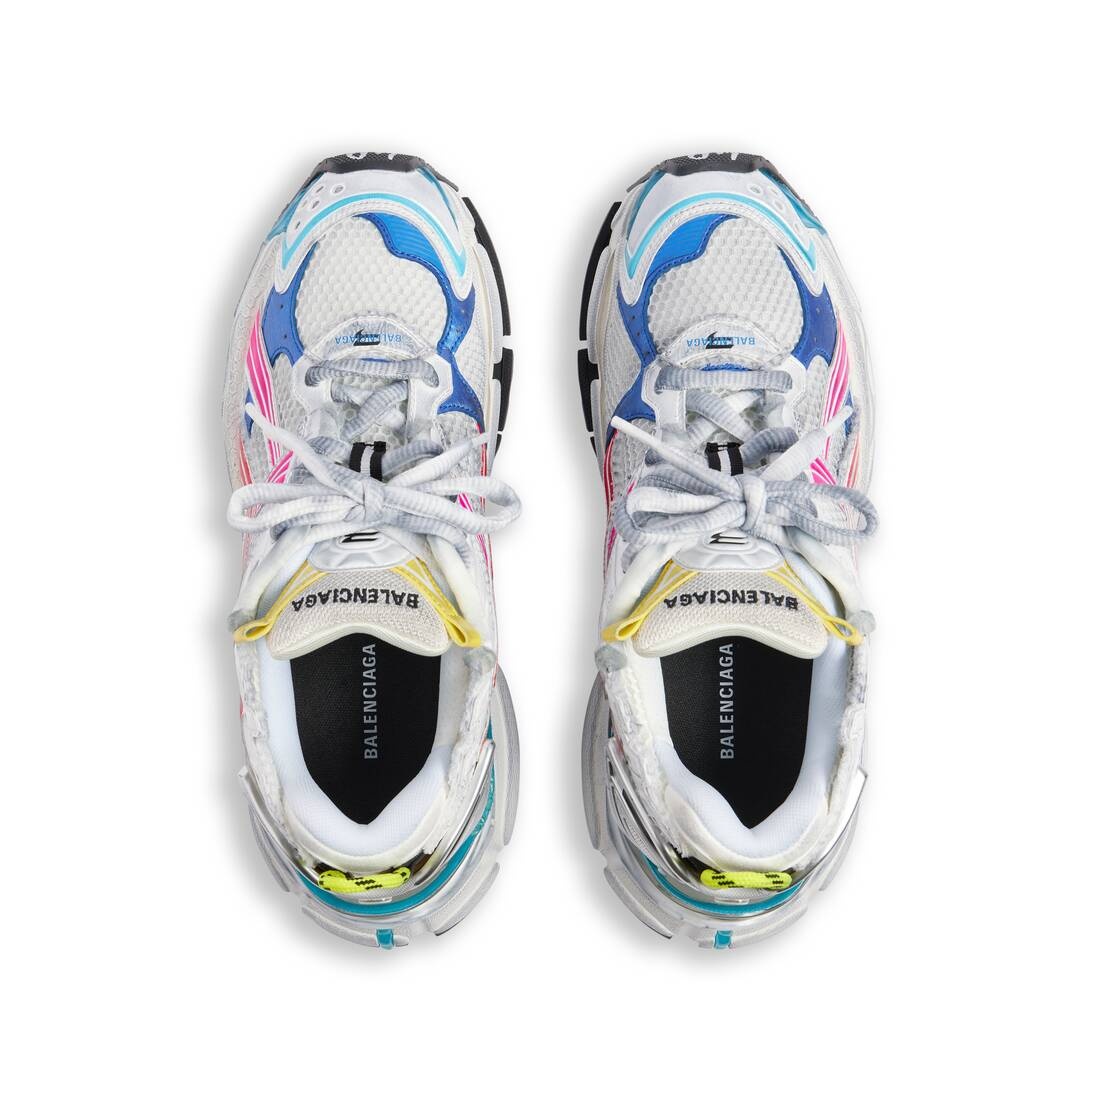 Men's Runner Sneaker in Multicolored - 6